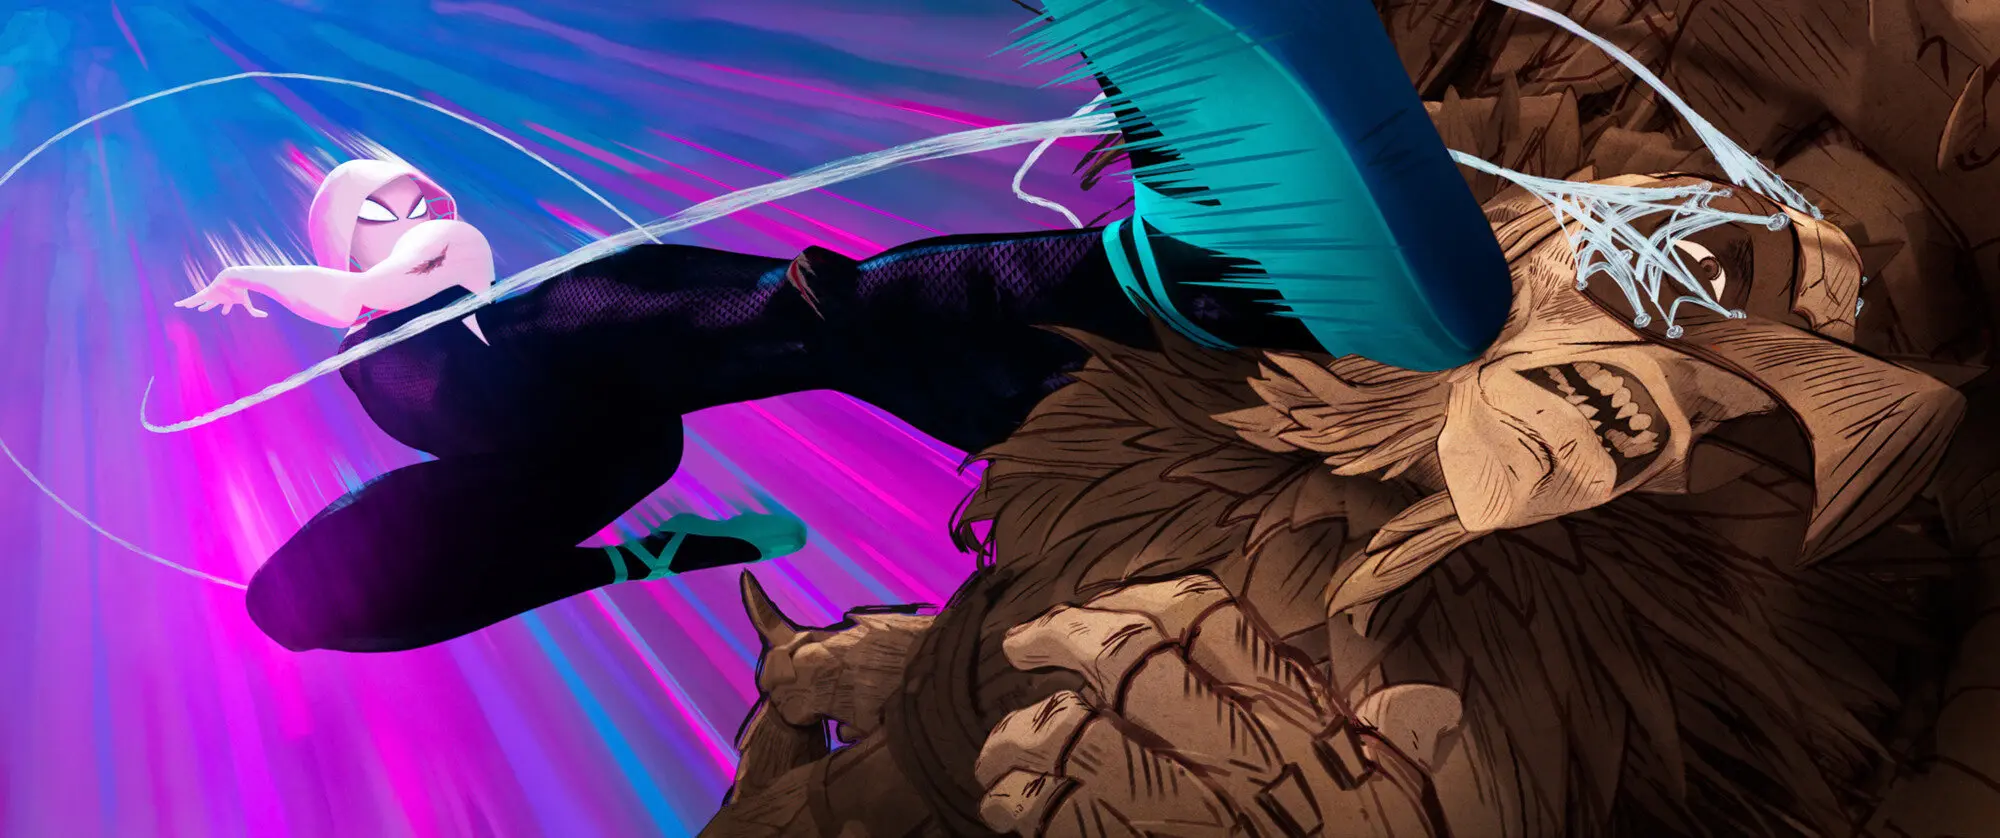 Spider-Gwen fights a Renaissance Vulture